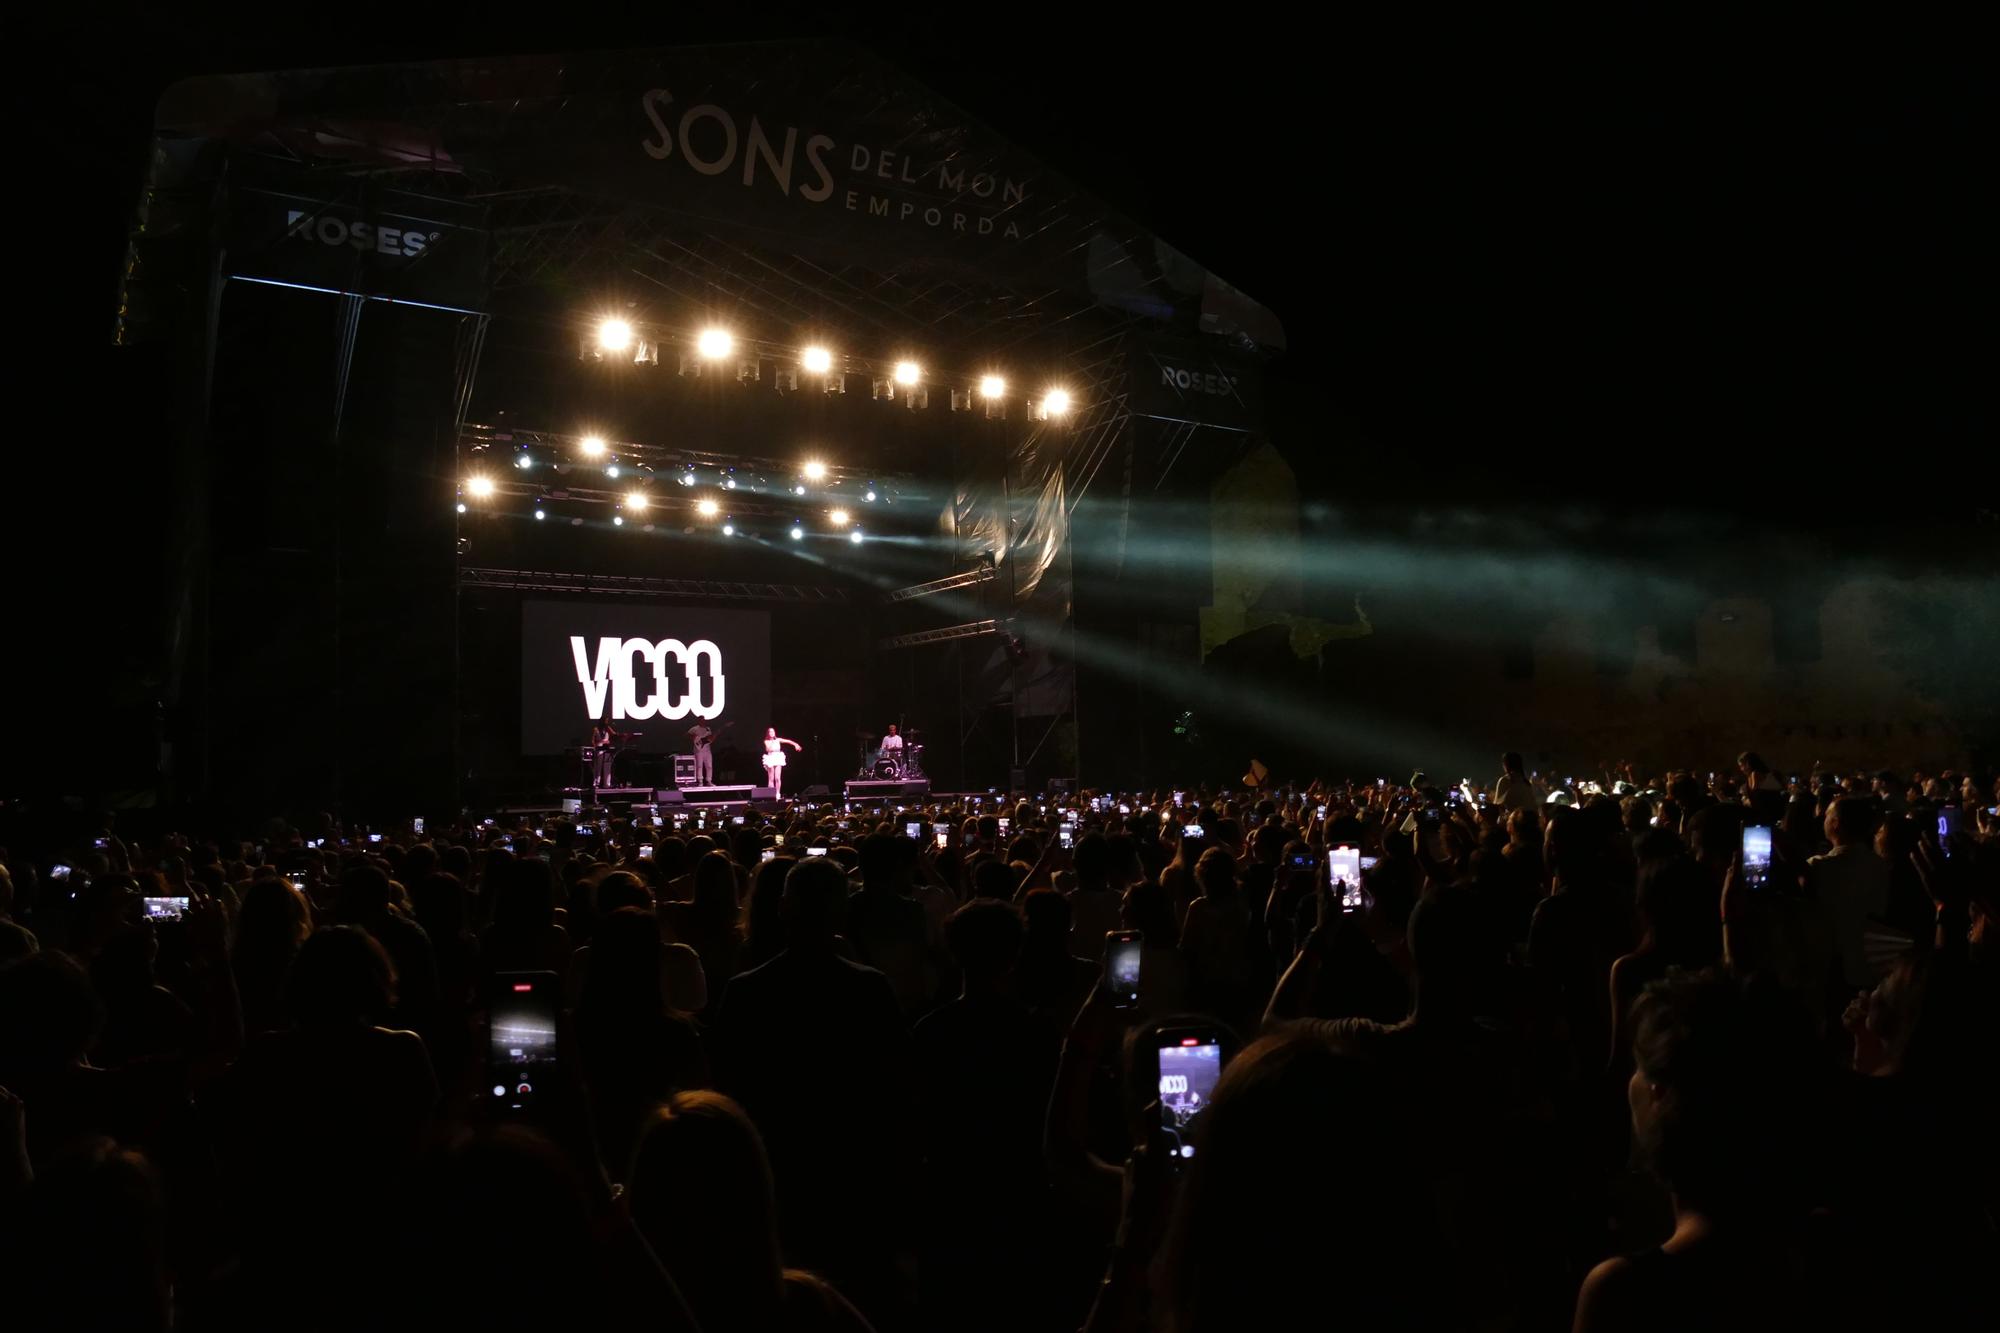 Locomía, Chanel i Vicco brillen a l'estrena de Sons del Món